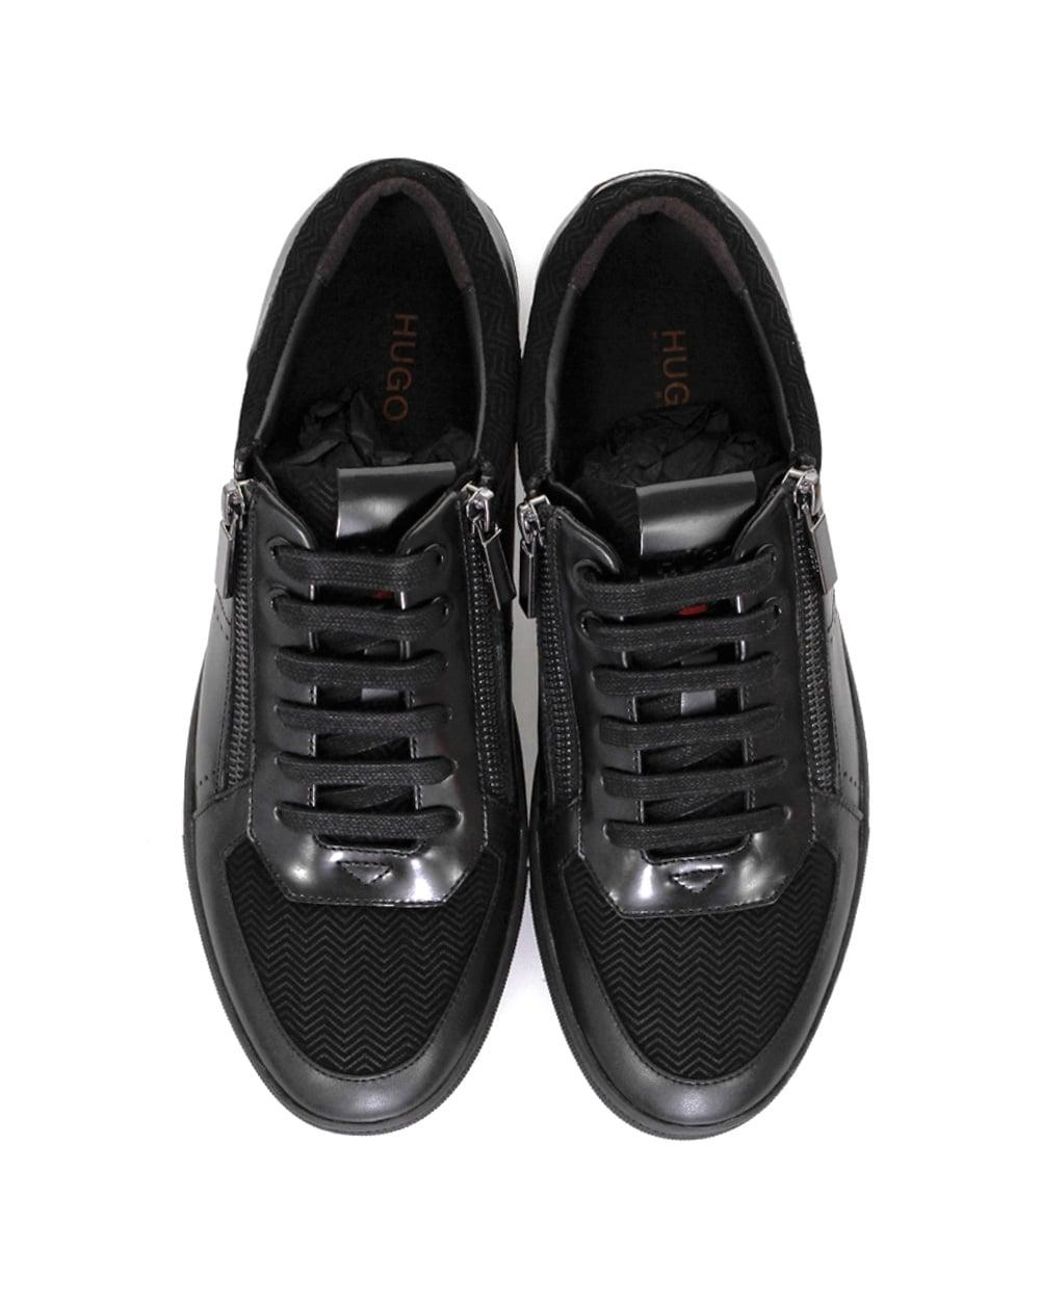 HUGO Leather Hugo Boss Futurism Tenn Black Shoes for Men | Lyst UK